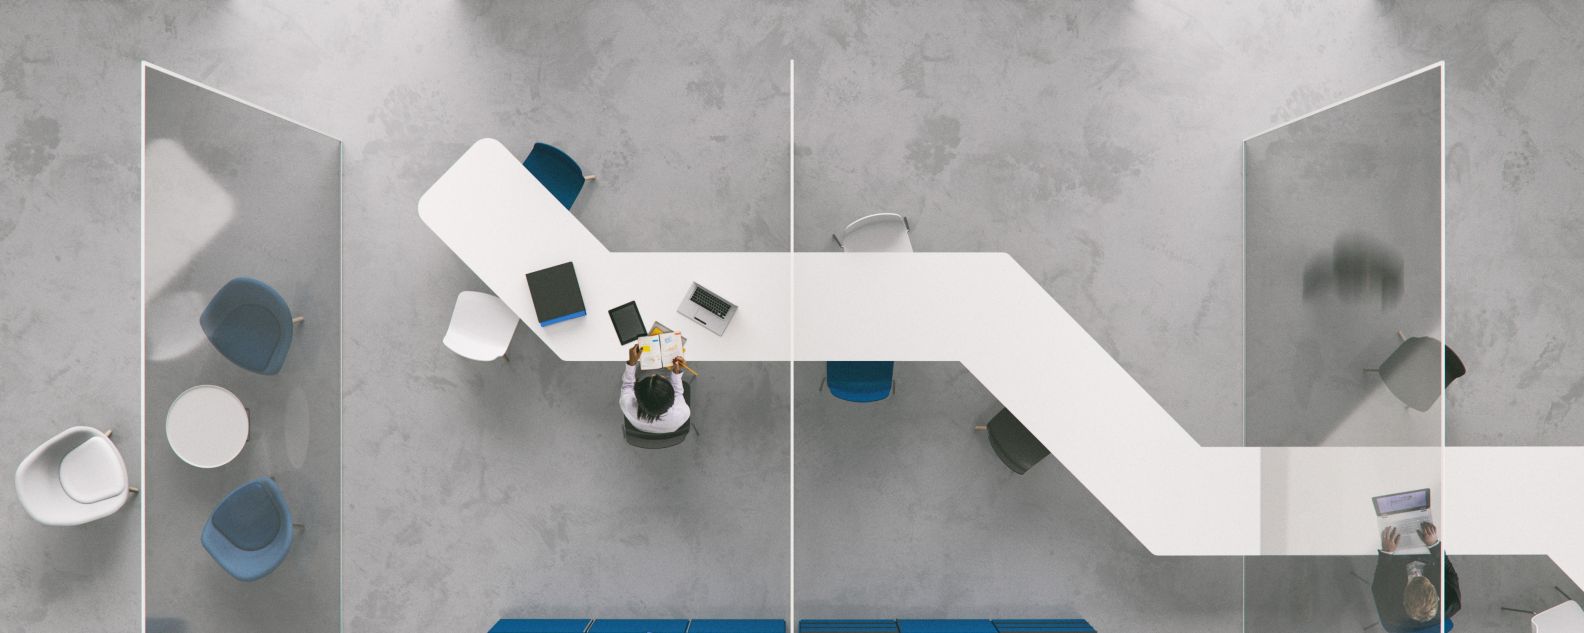 vue aérienne d’un employé assis dans des bureaux modernes